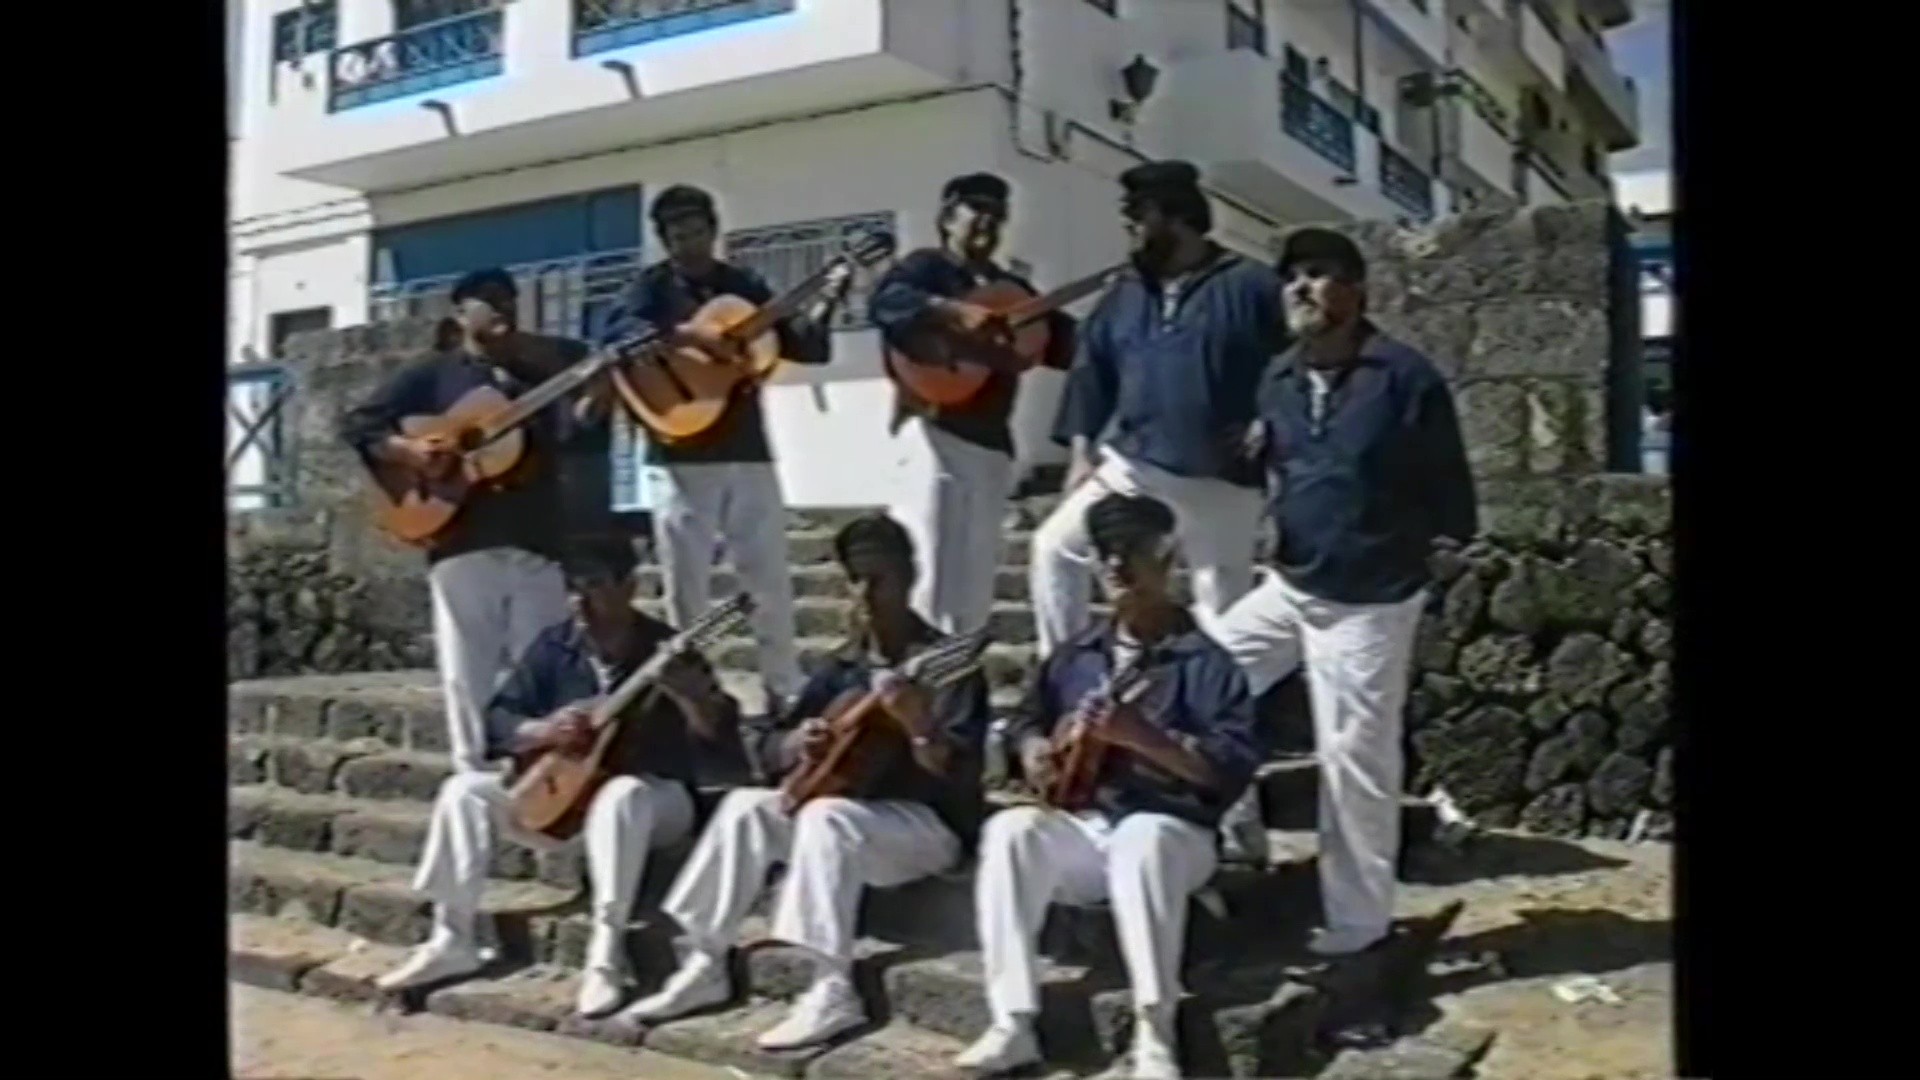 Grupo Amigos de Portonao (1990)